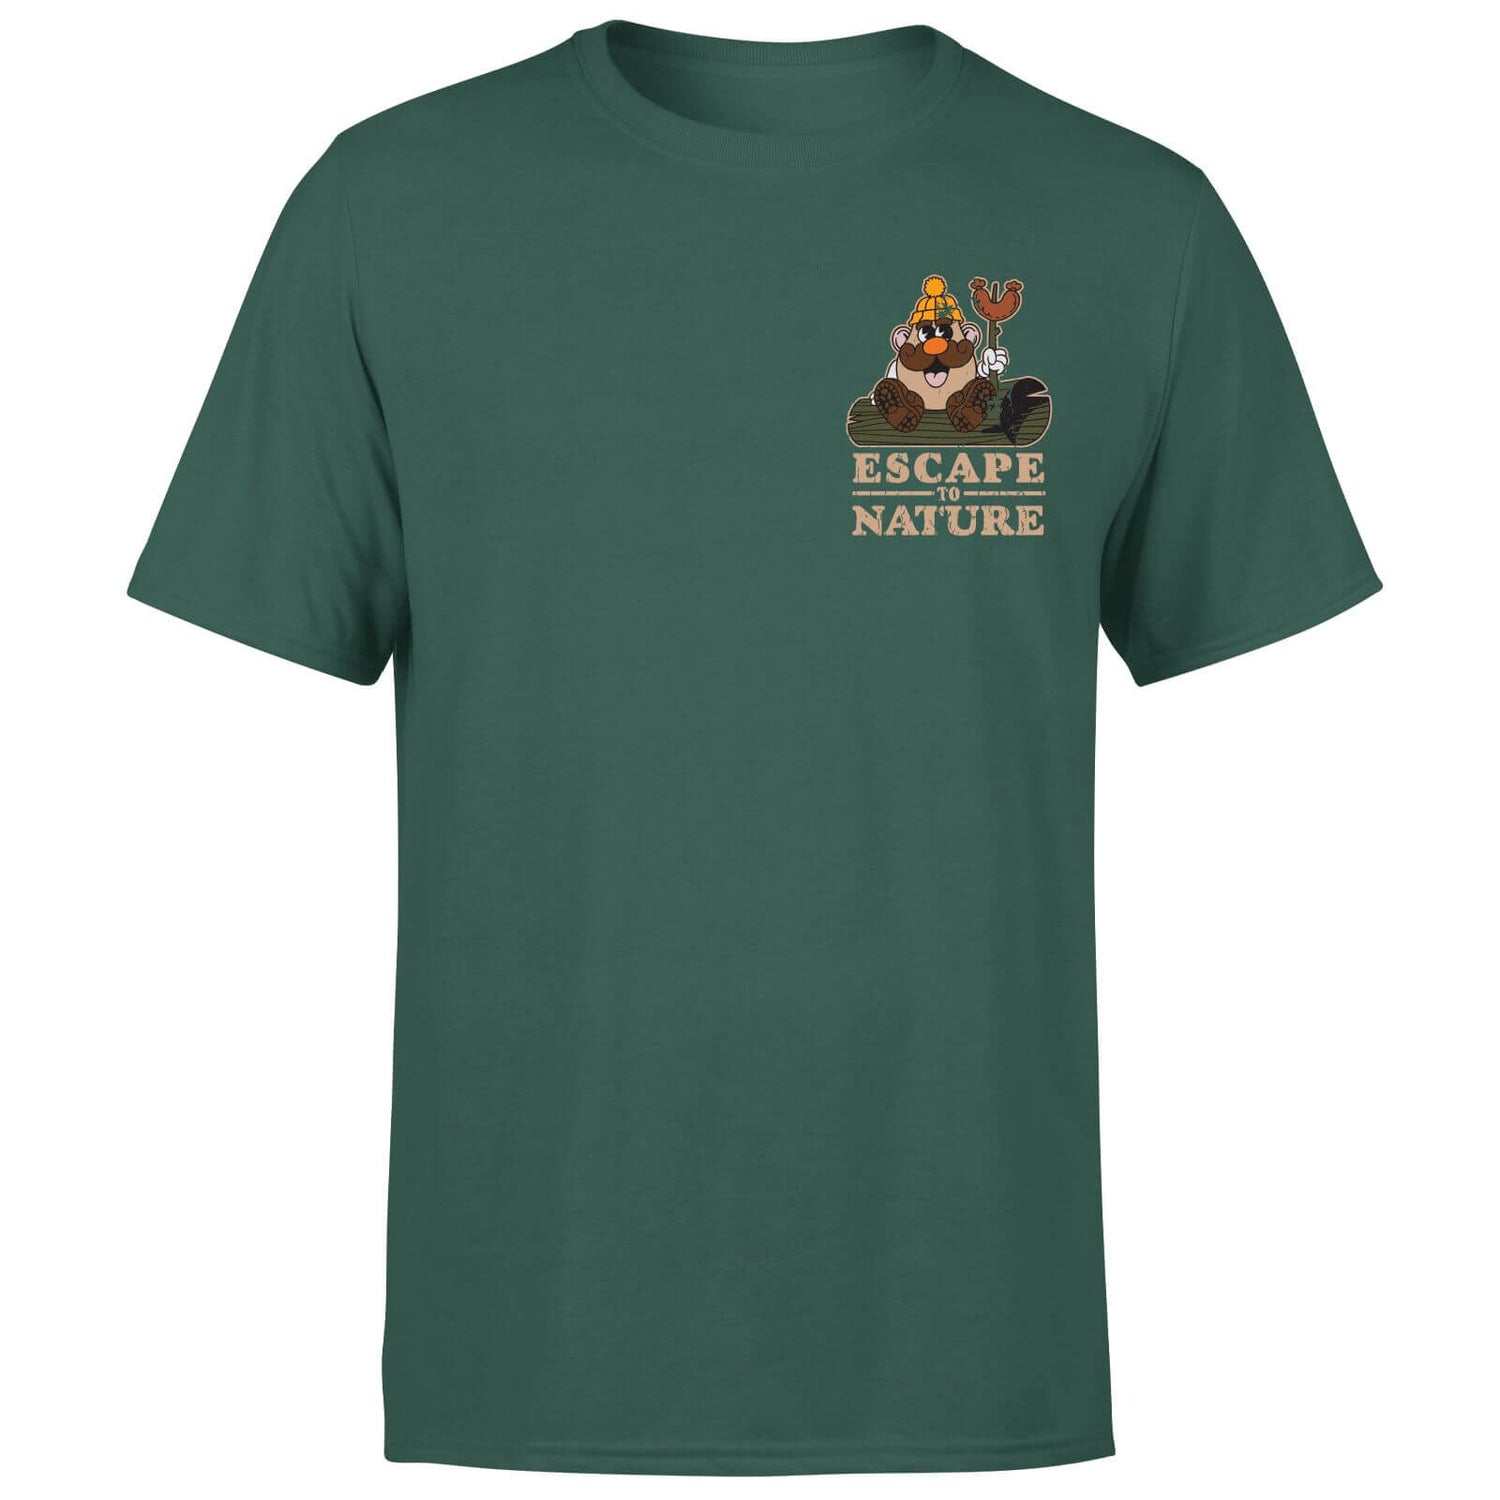 Camiseta de Mr. Potato Head Escape To Nature para hombre - Verde